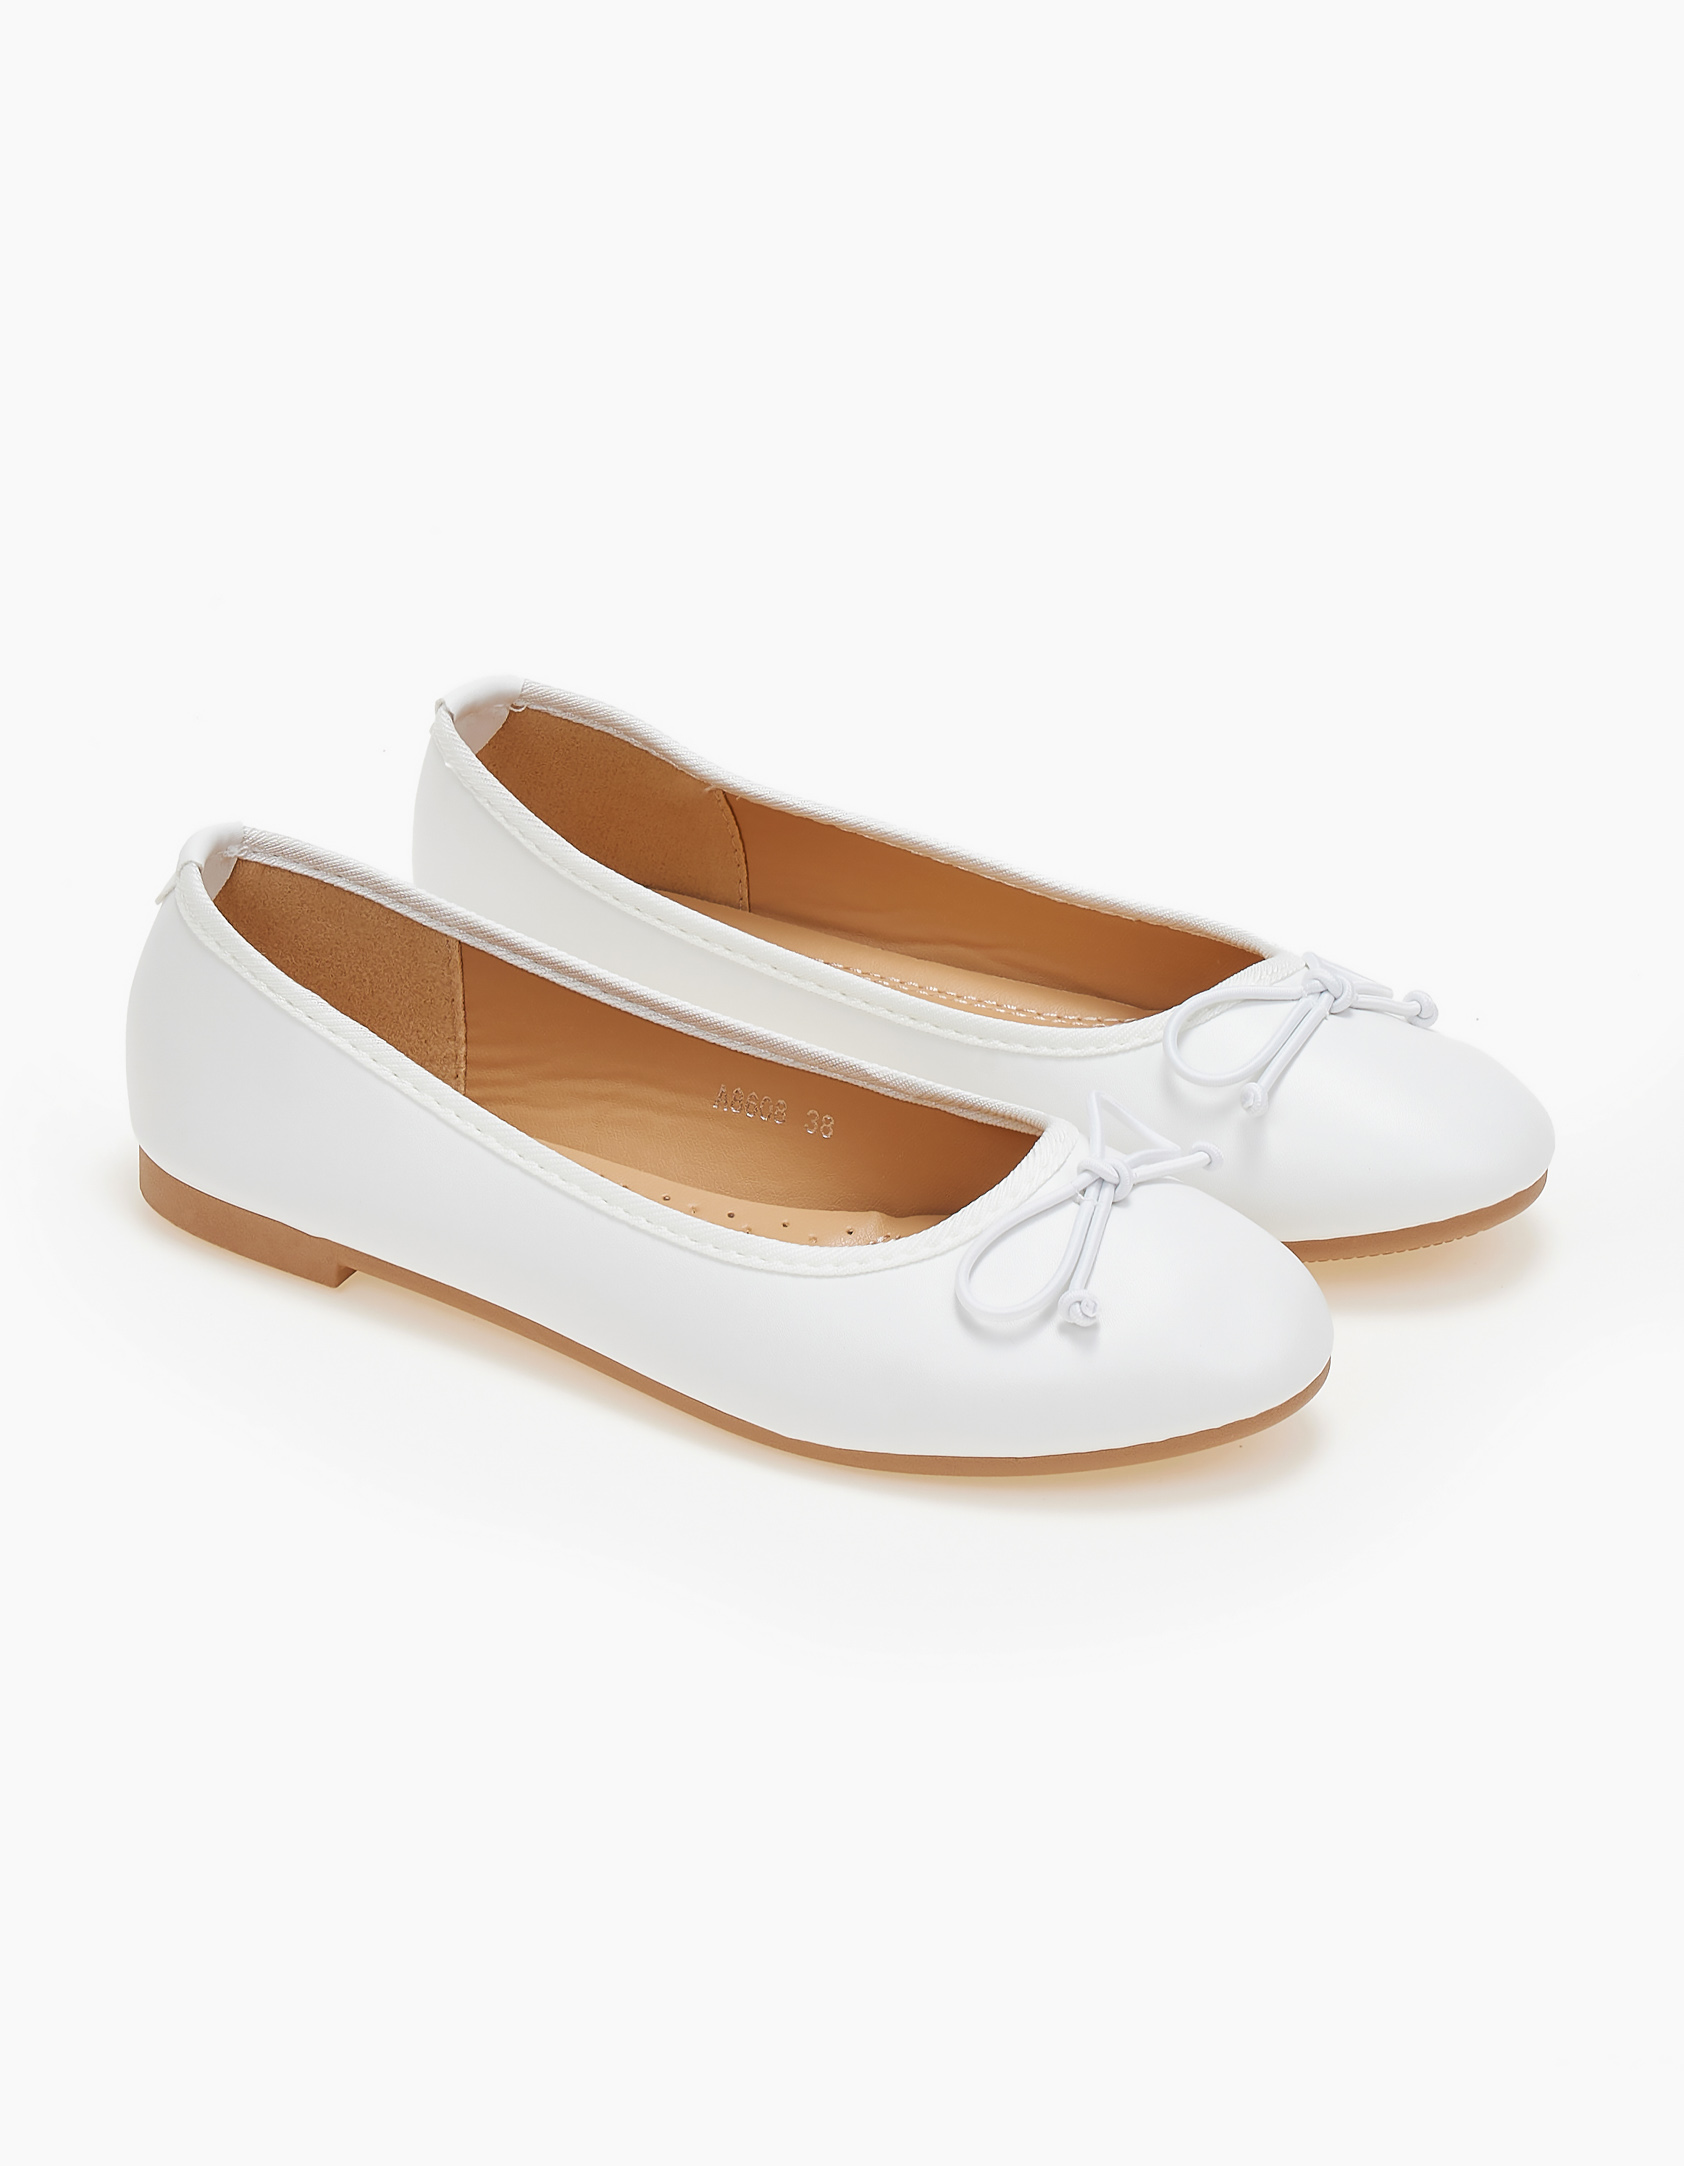 Παπούτσια > Μπαλαρίνες Γυναικείες μπαλαρίνες με διακοσμητικό φιόγκο - Λευκό